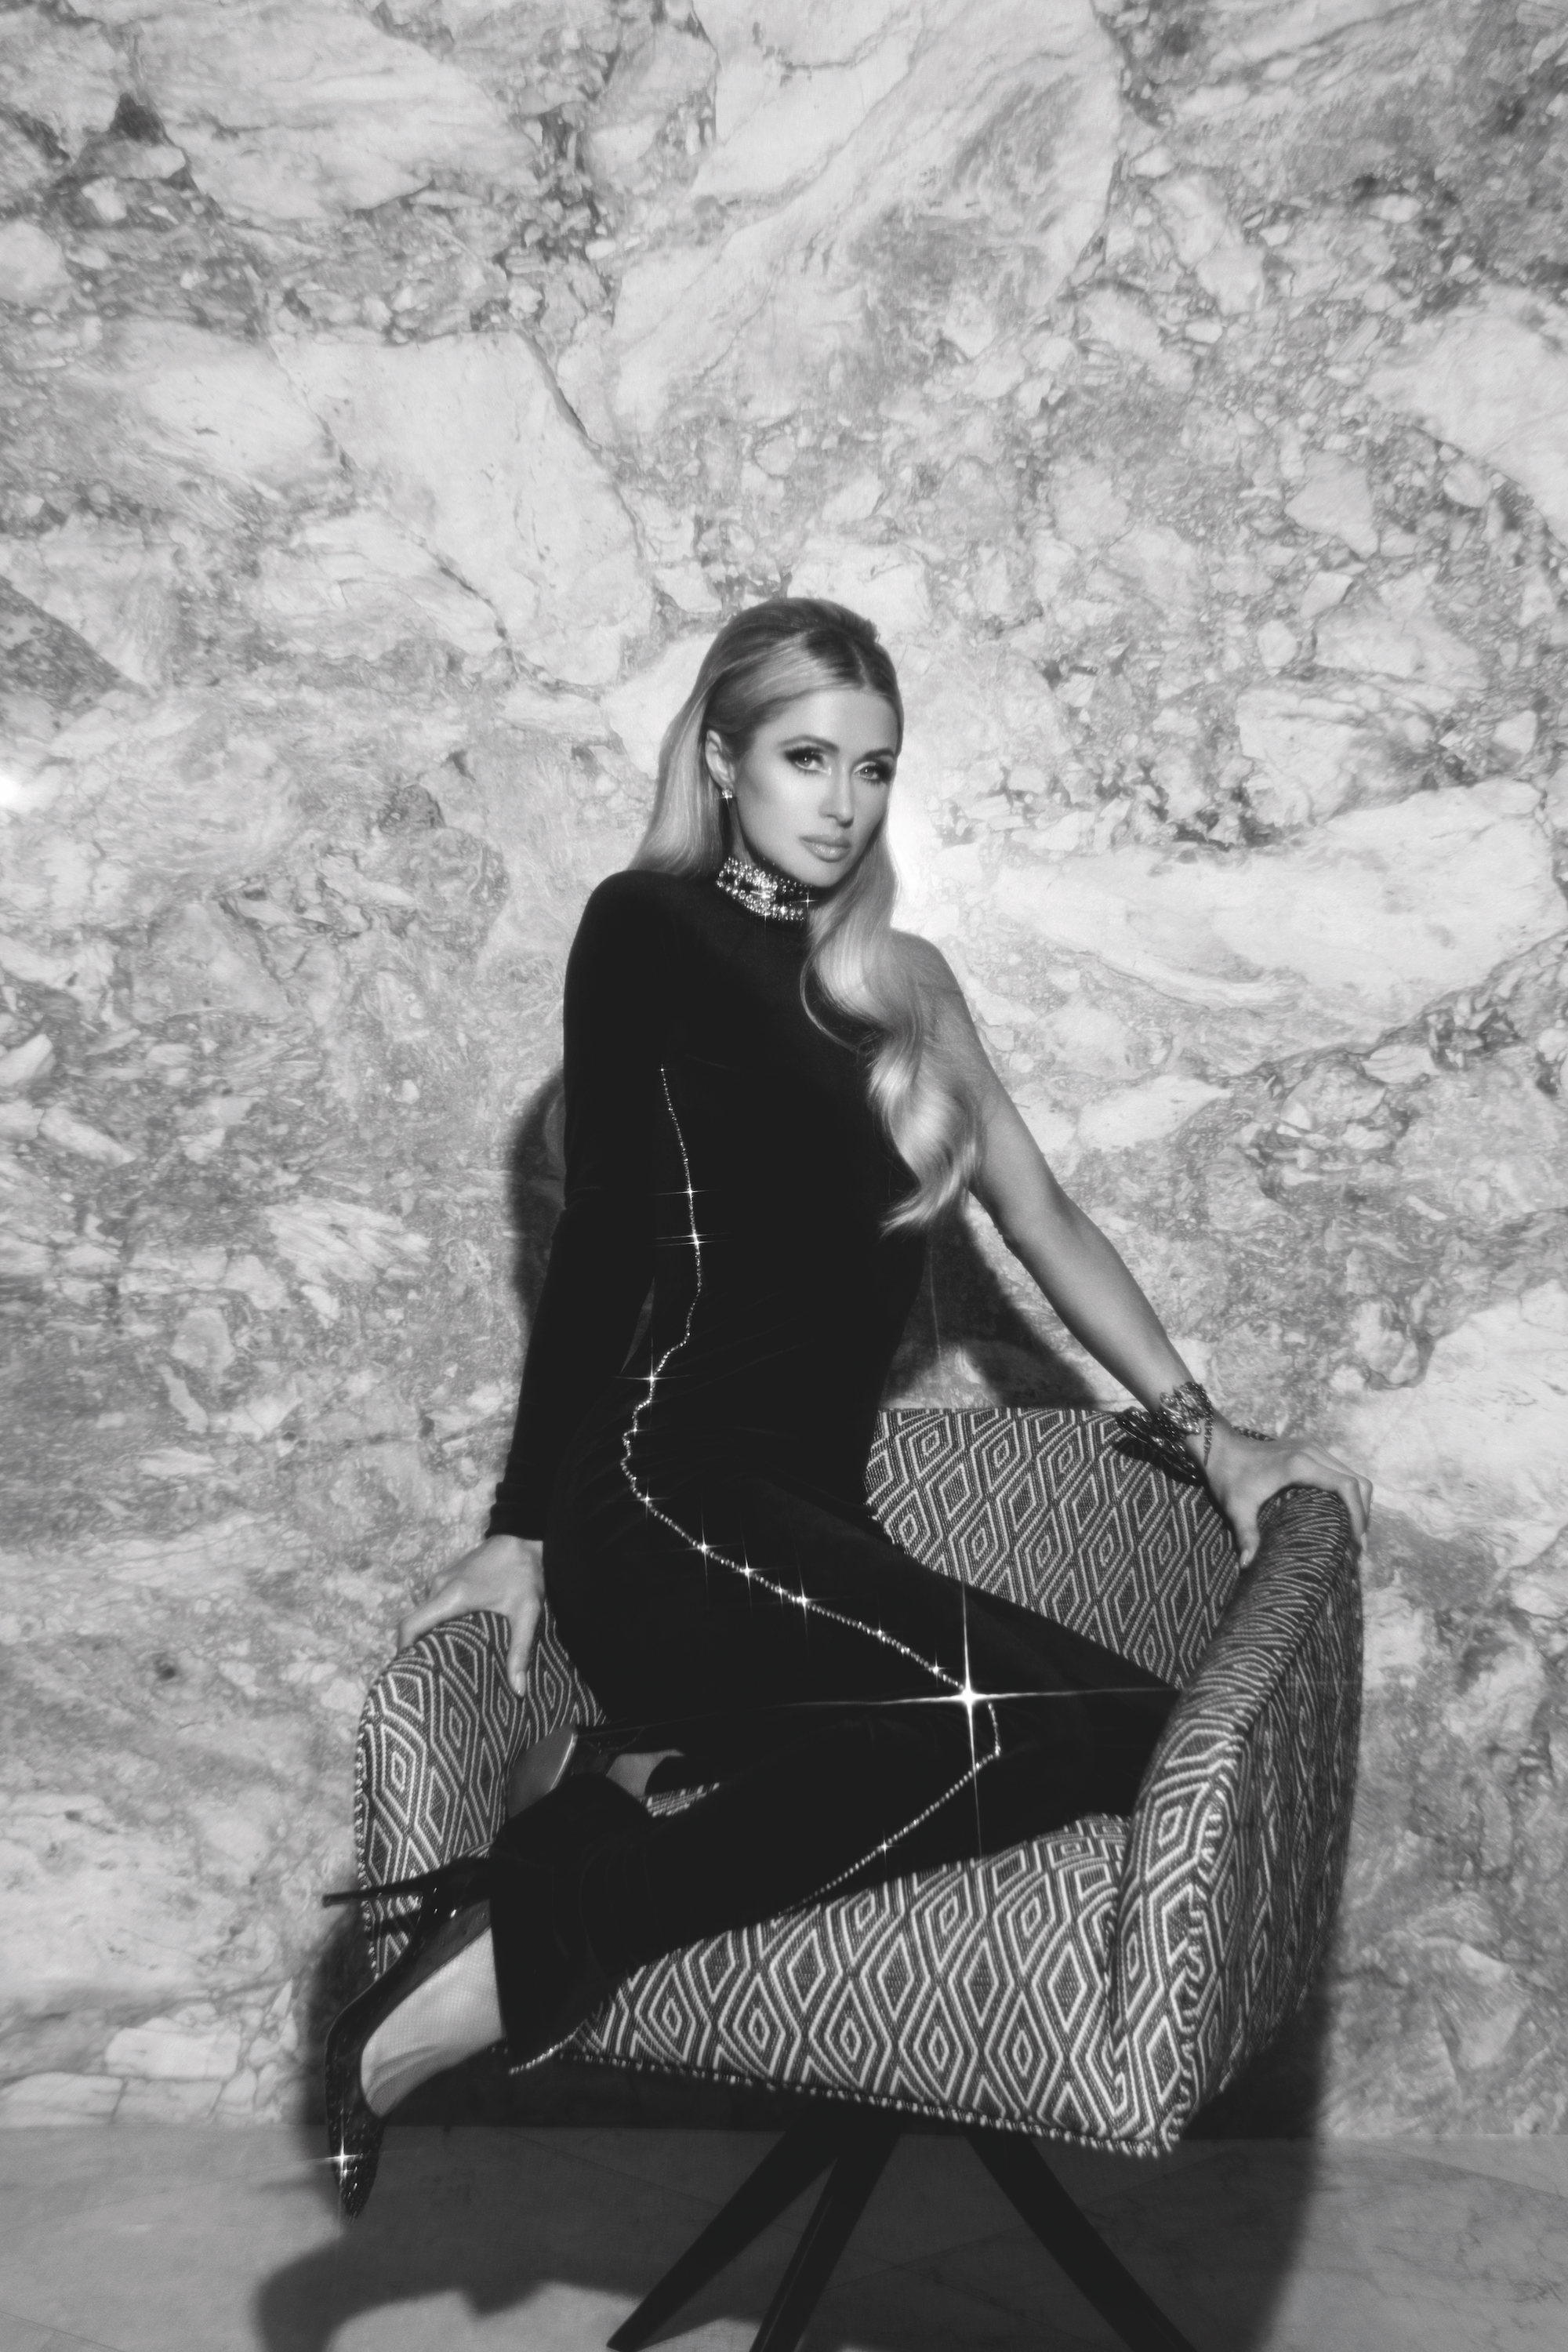 Photo n°6 : Paris Hilton suintant Sex Appeal dans New Shoot!